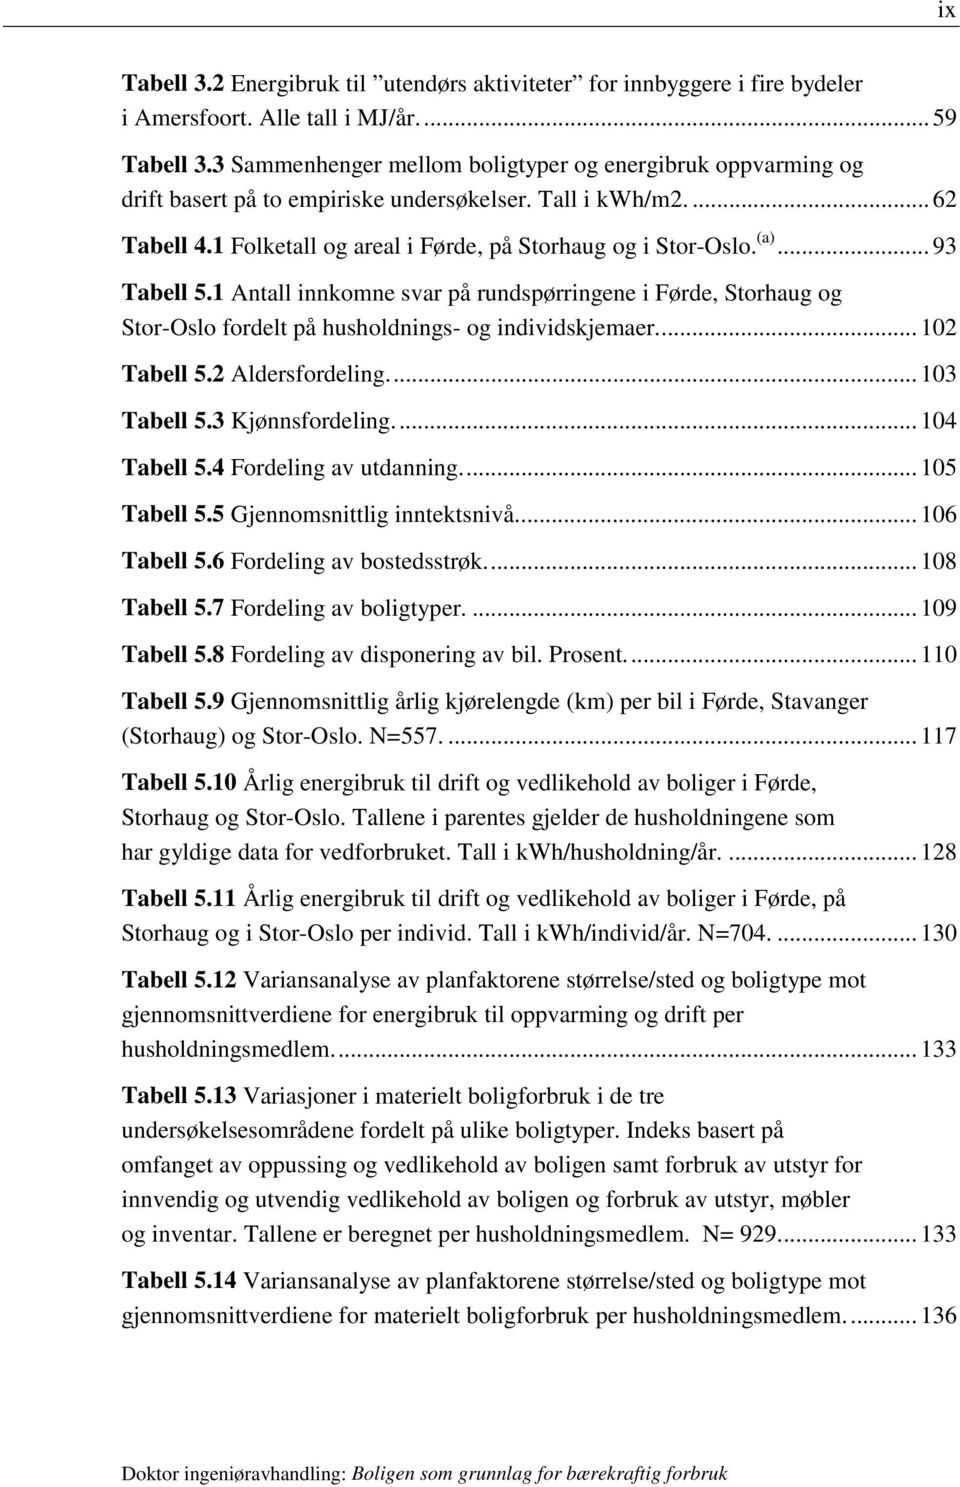 .. 93 Tabell 5.1 Antall innkomne svar på rundspørringene i Førde, Storhaug og Stor-Oslo fordelt på husholdnings- og individskjemaer... 102 Tabell 5.2 Aldersfordeling... 103 Tabell 5.3 Kjønnsfordeling.